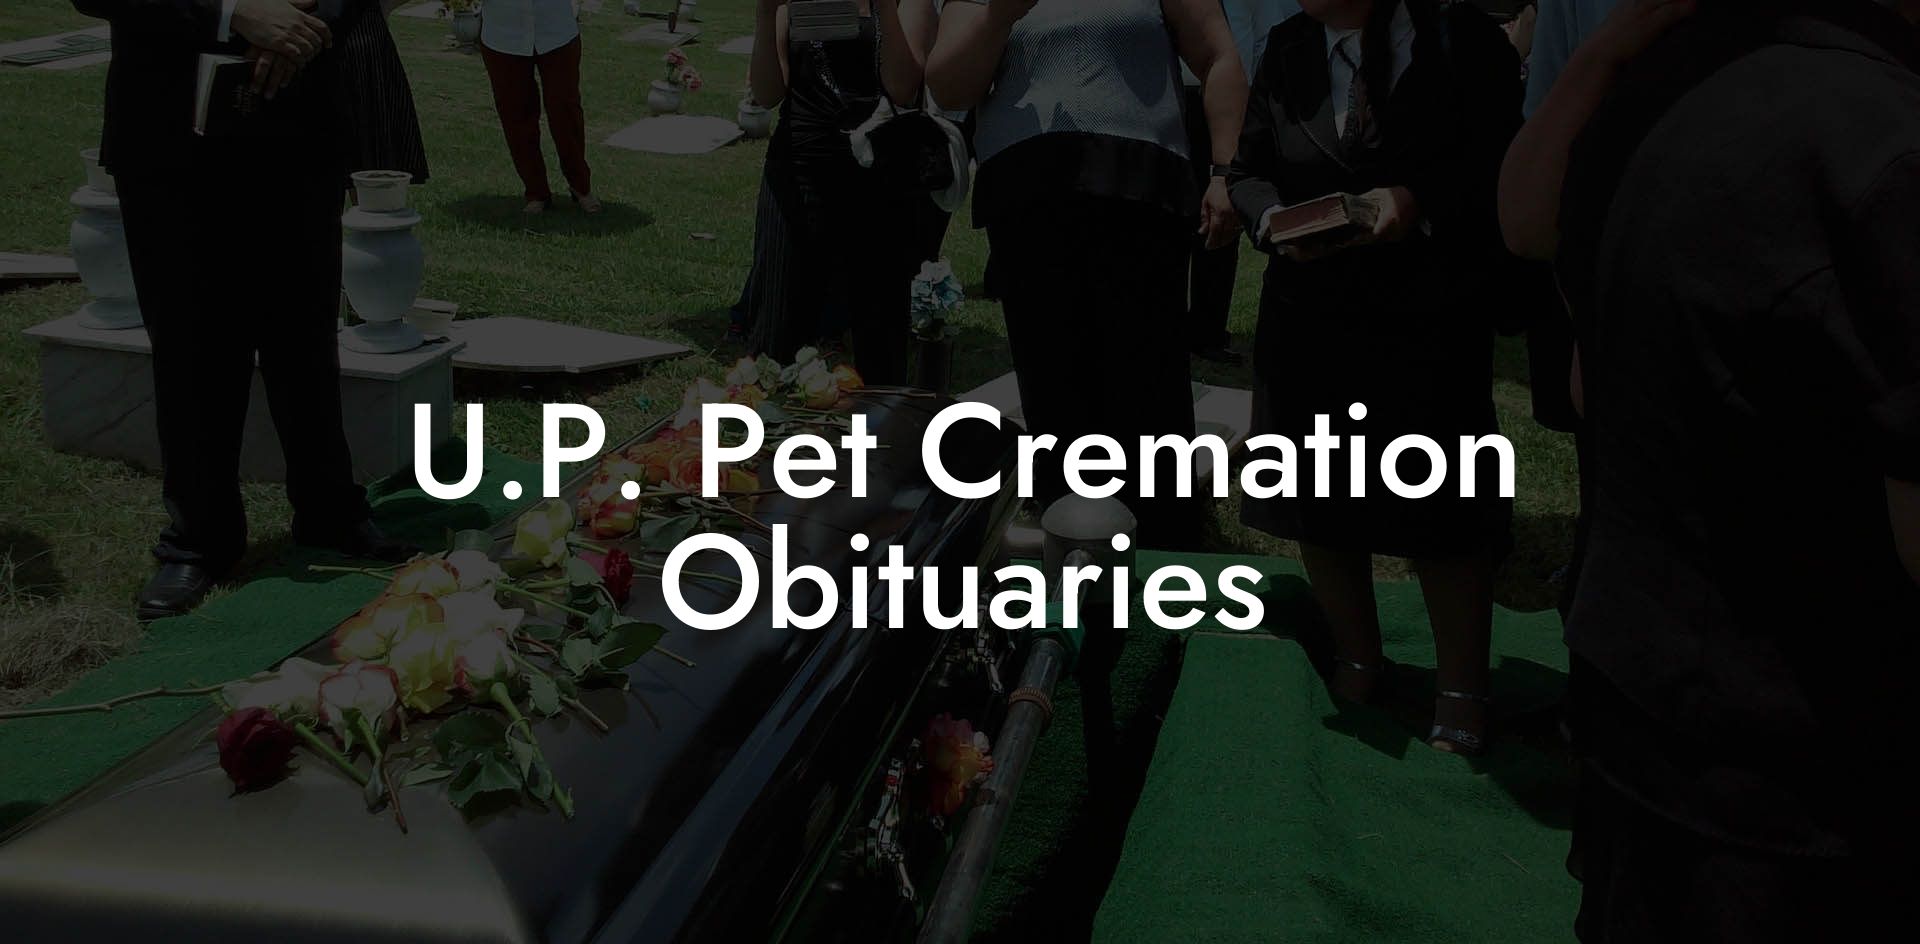 U.P. Pet Cremation Obituaries